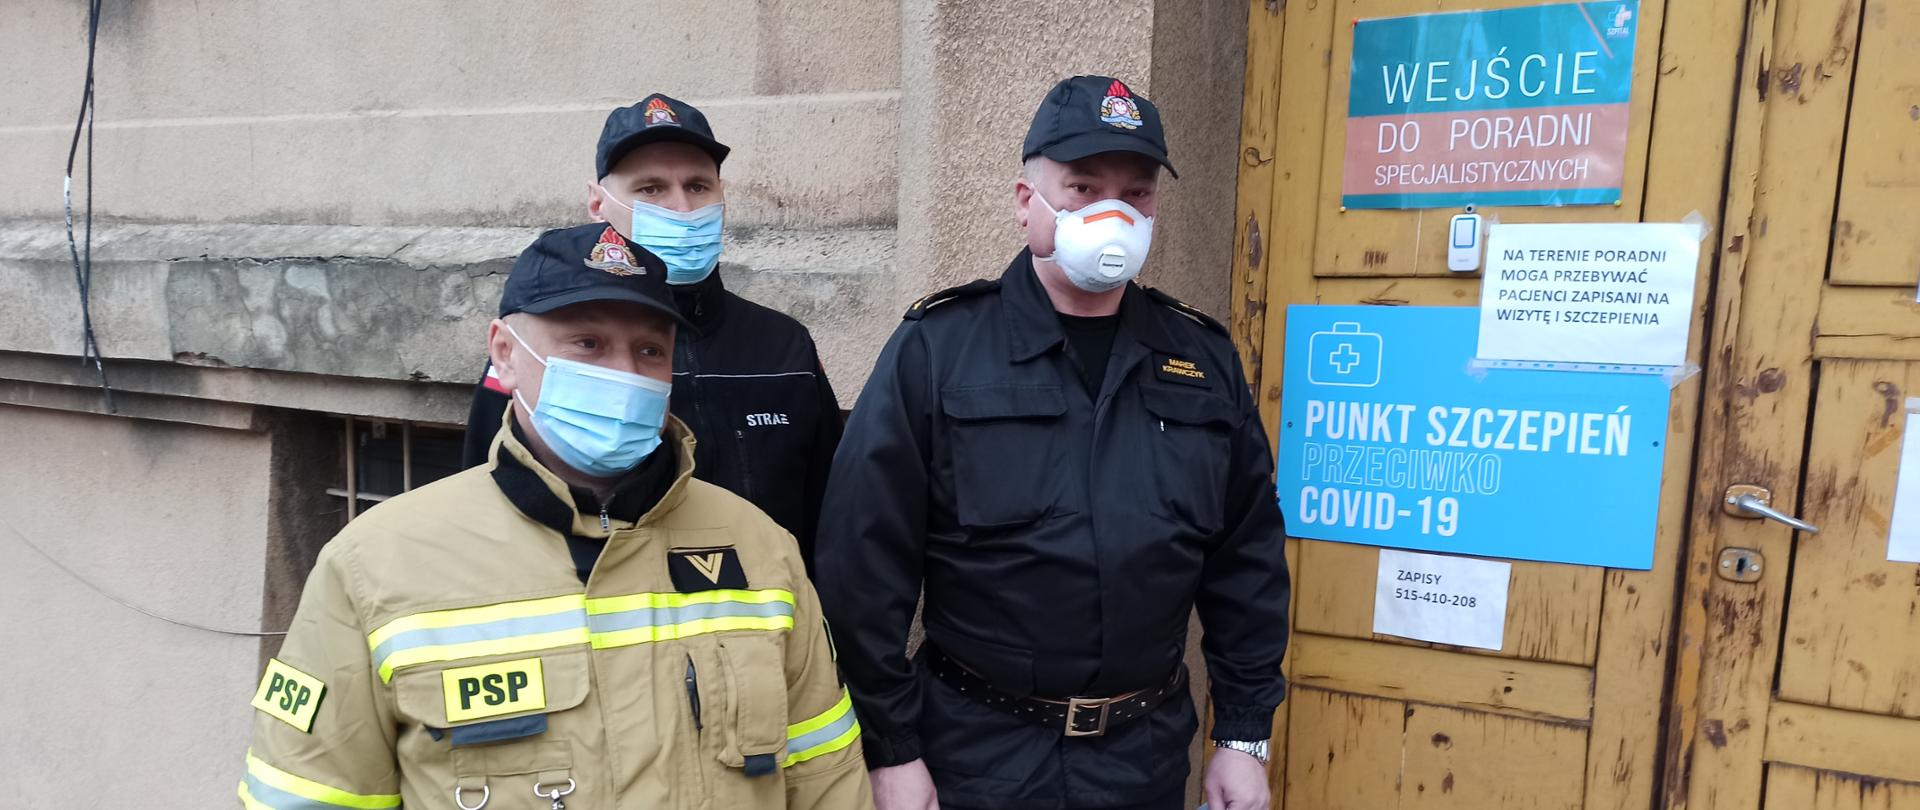 Trzech strażaków w mundurach stoi przed punktem szczepień. Każdy z nich ma na twarzy maseczkę ochronną.